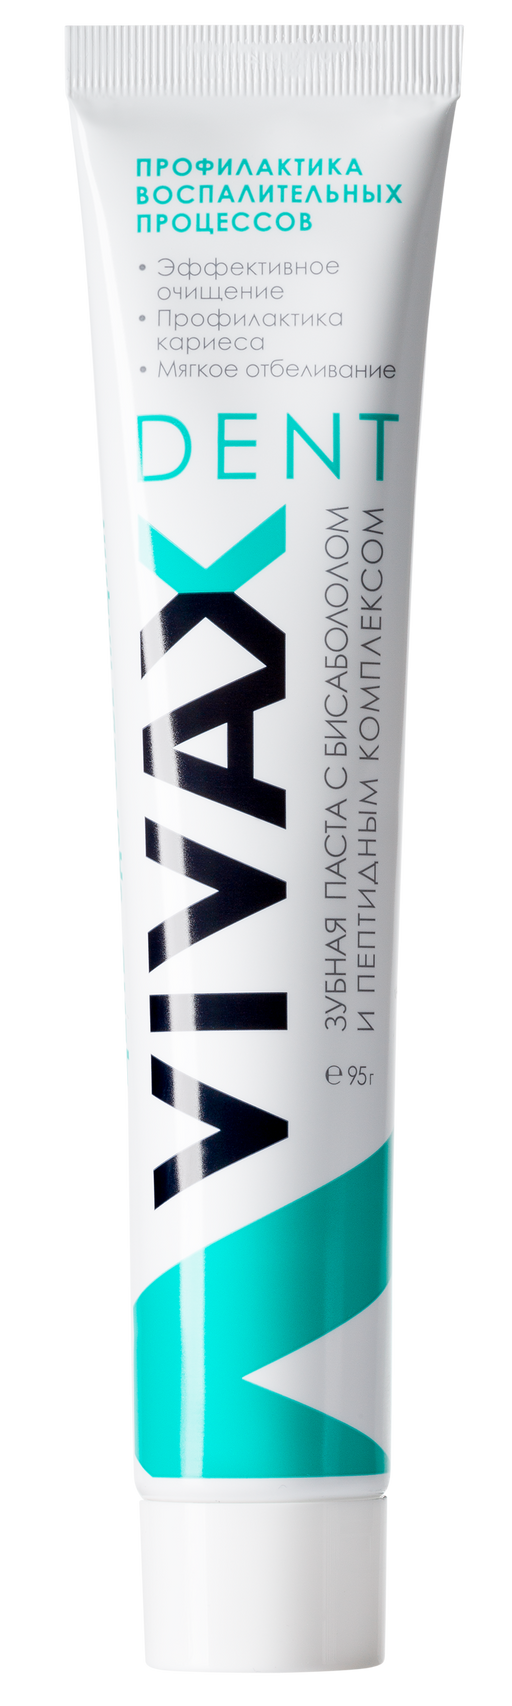 Vivax Dent Зубная паста c Бисабололом и пептидным комплексом, паста зубная, 75 мл, 1 шт.